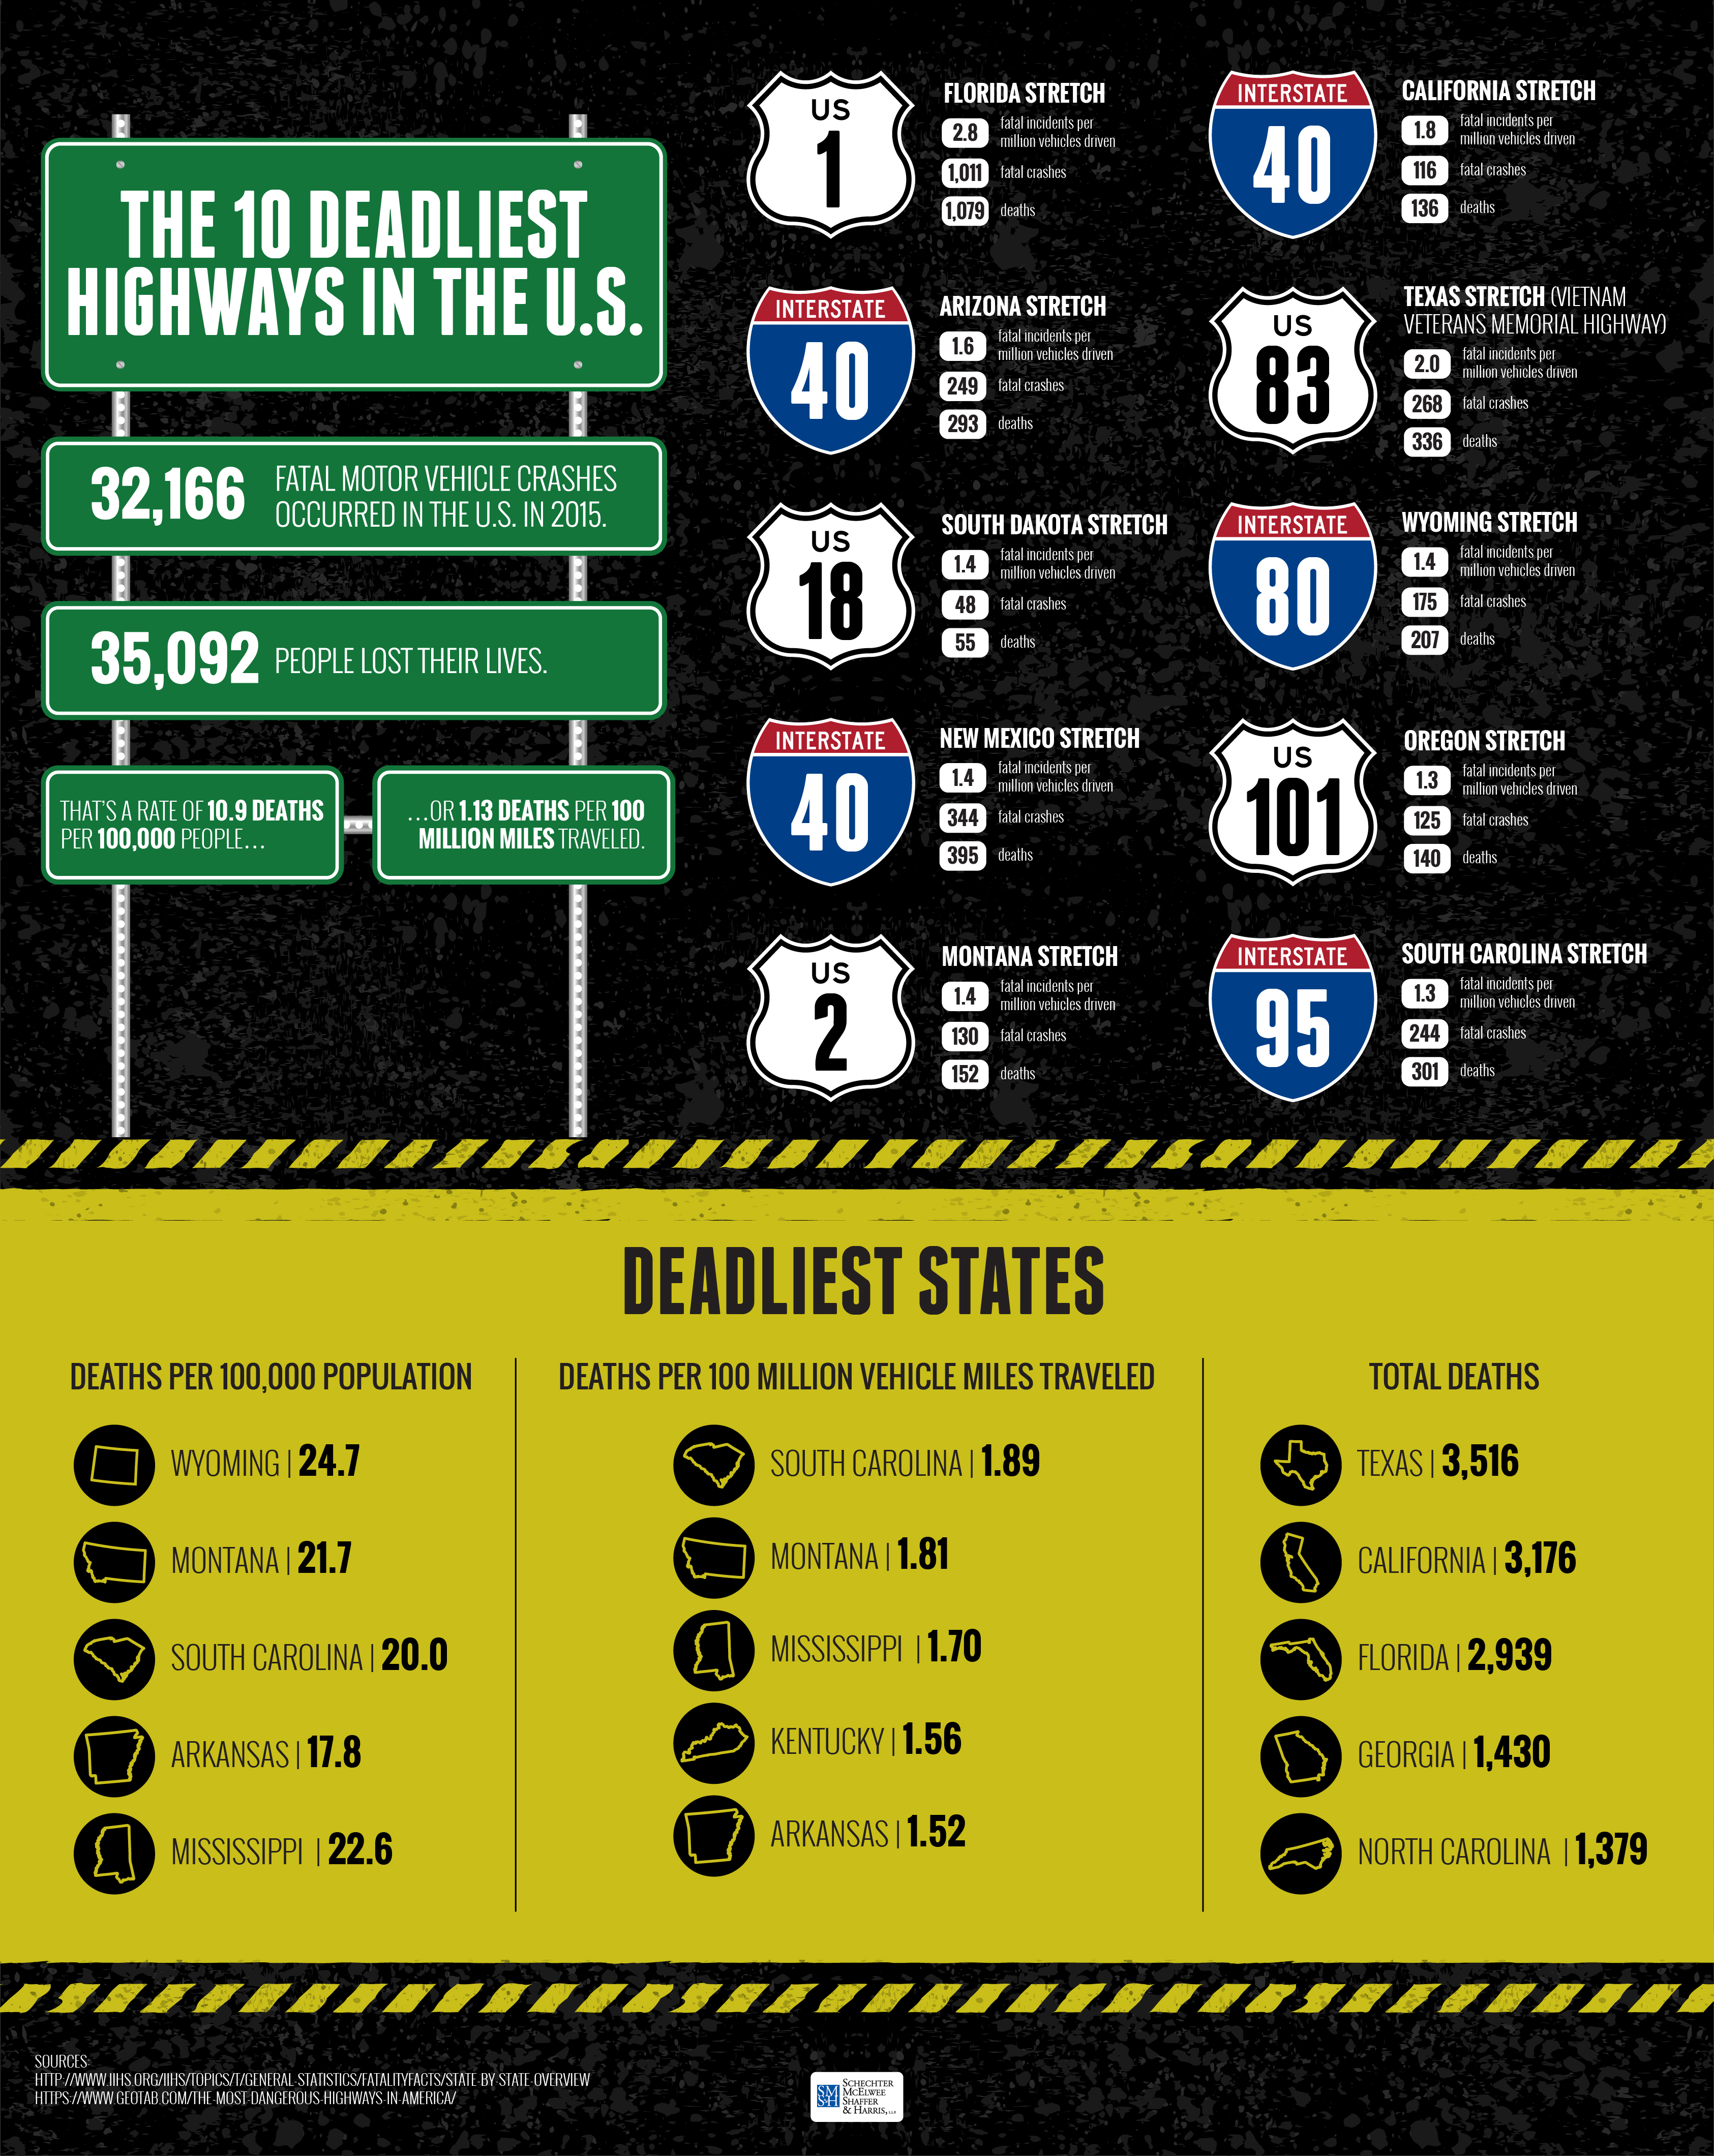 The 10 Deadliest Highways in the U.S.